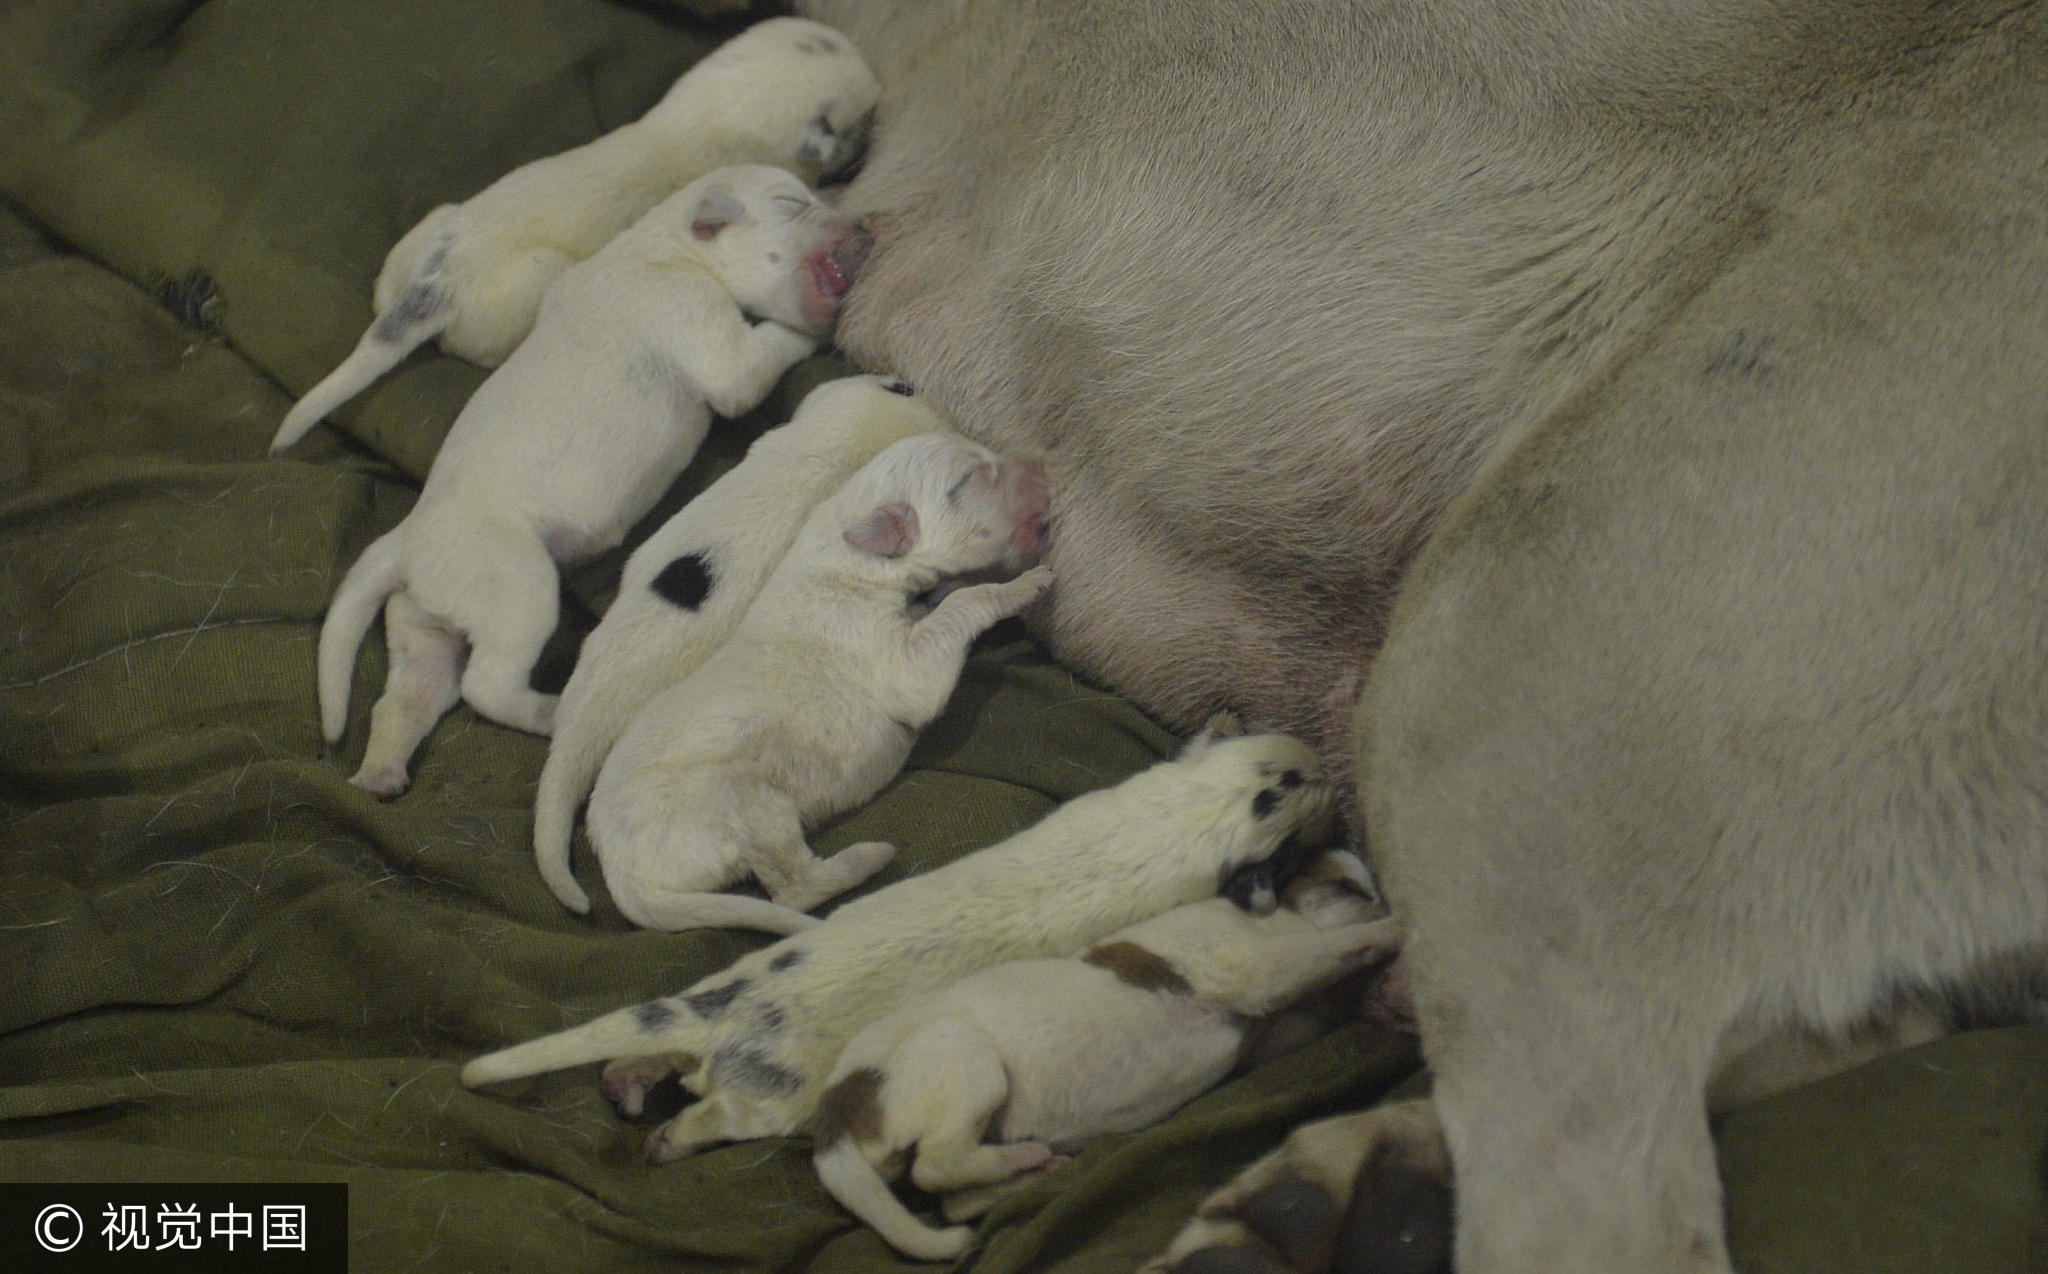 一只高产狗妈妈正在做产后输液,就在几天前,它陆续产下了31只小狗崽